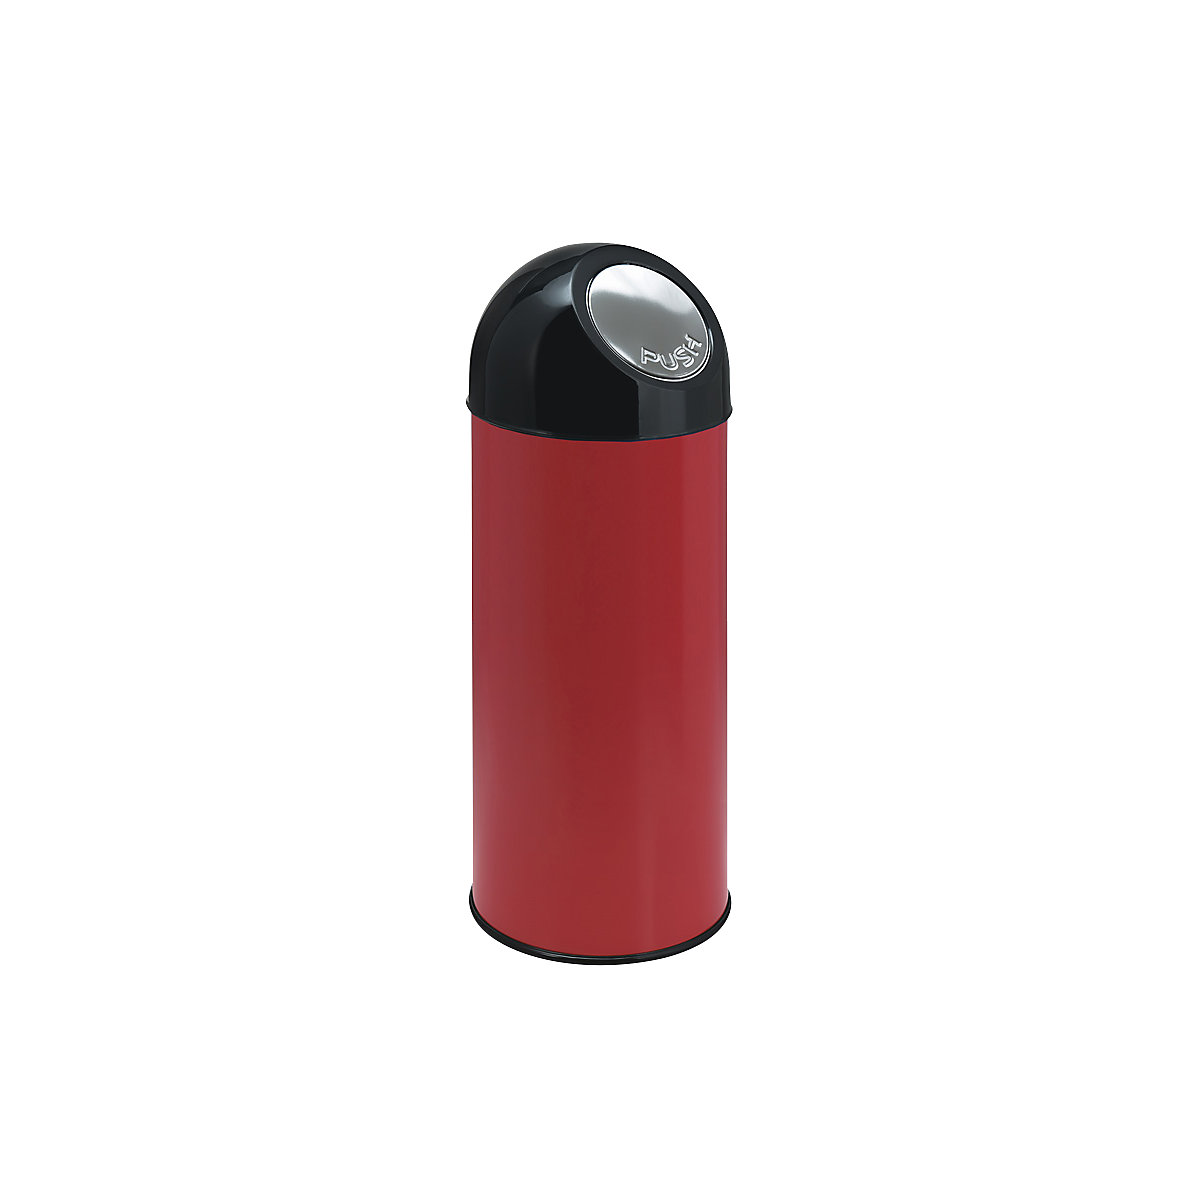 Pojemnik na odpady typu Push, poj. 55 l, pojemnik wewnętrzny ocynkowany, czerwony, od 2 szt.-11